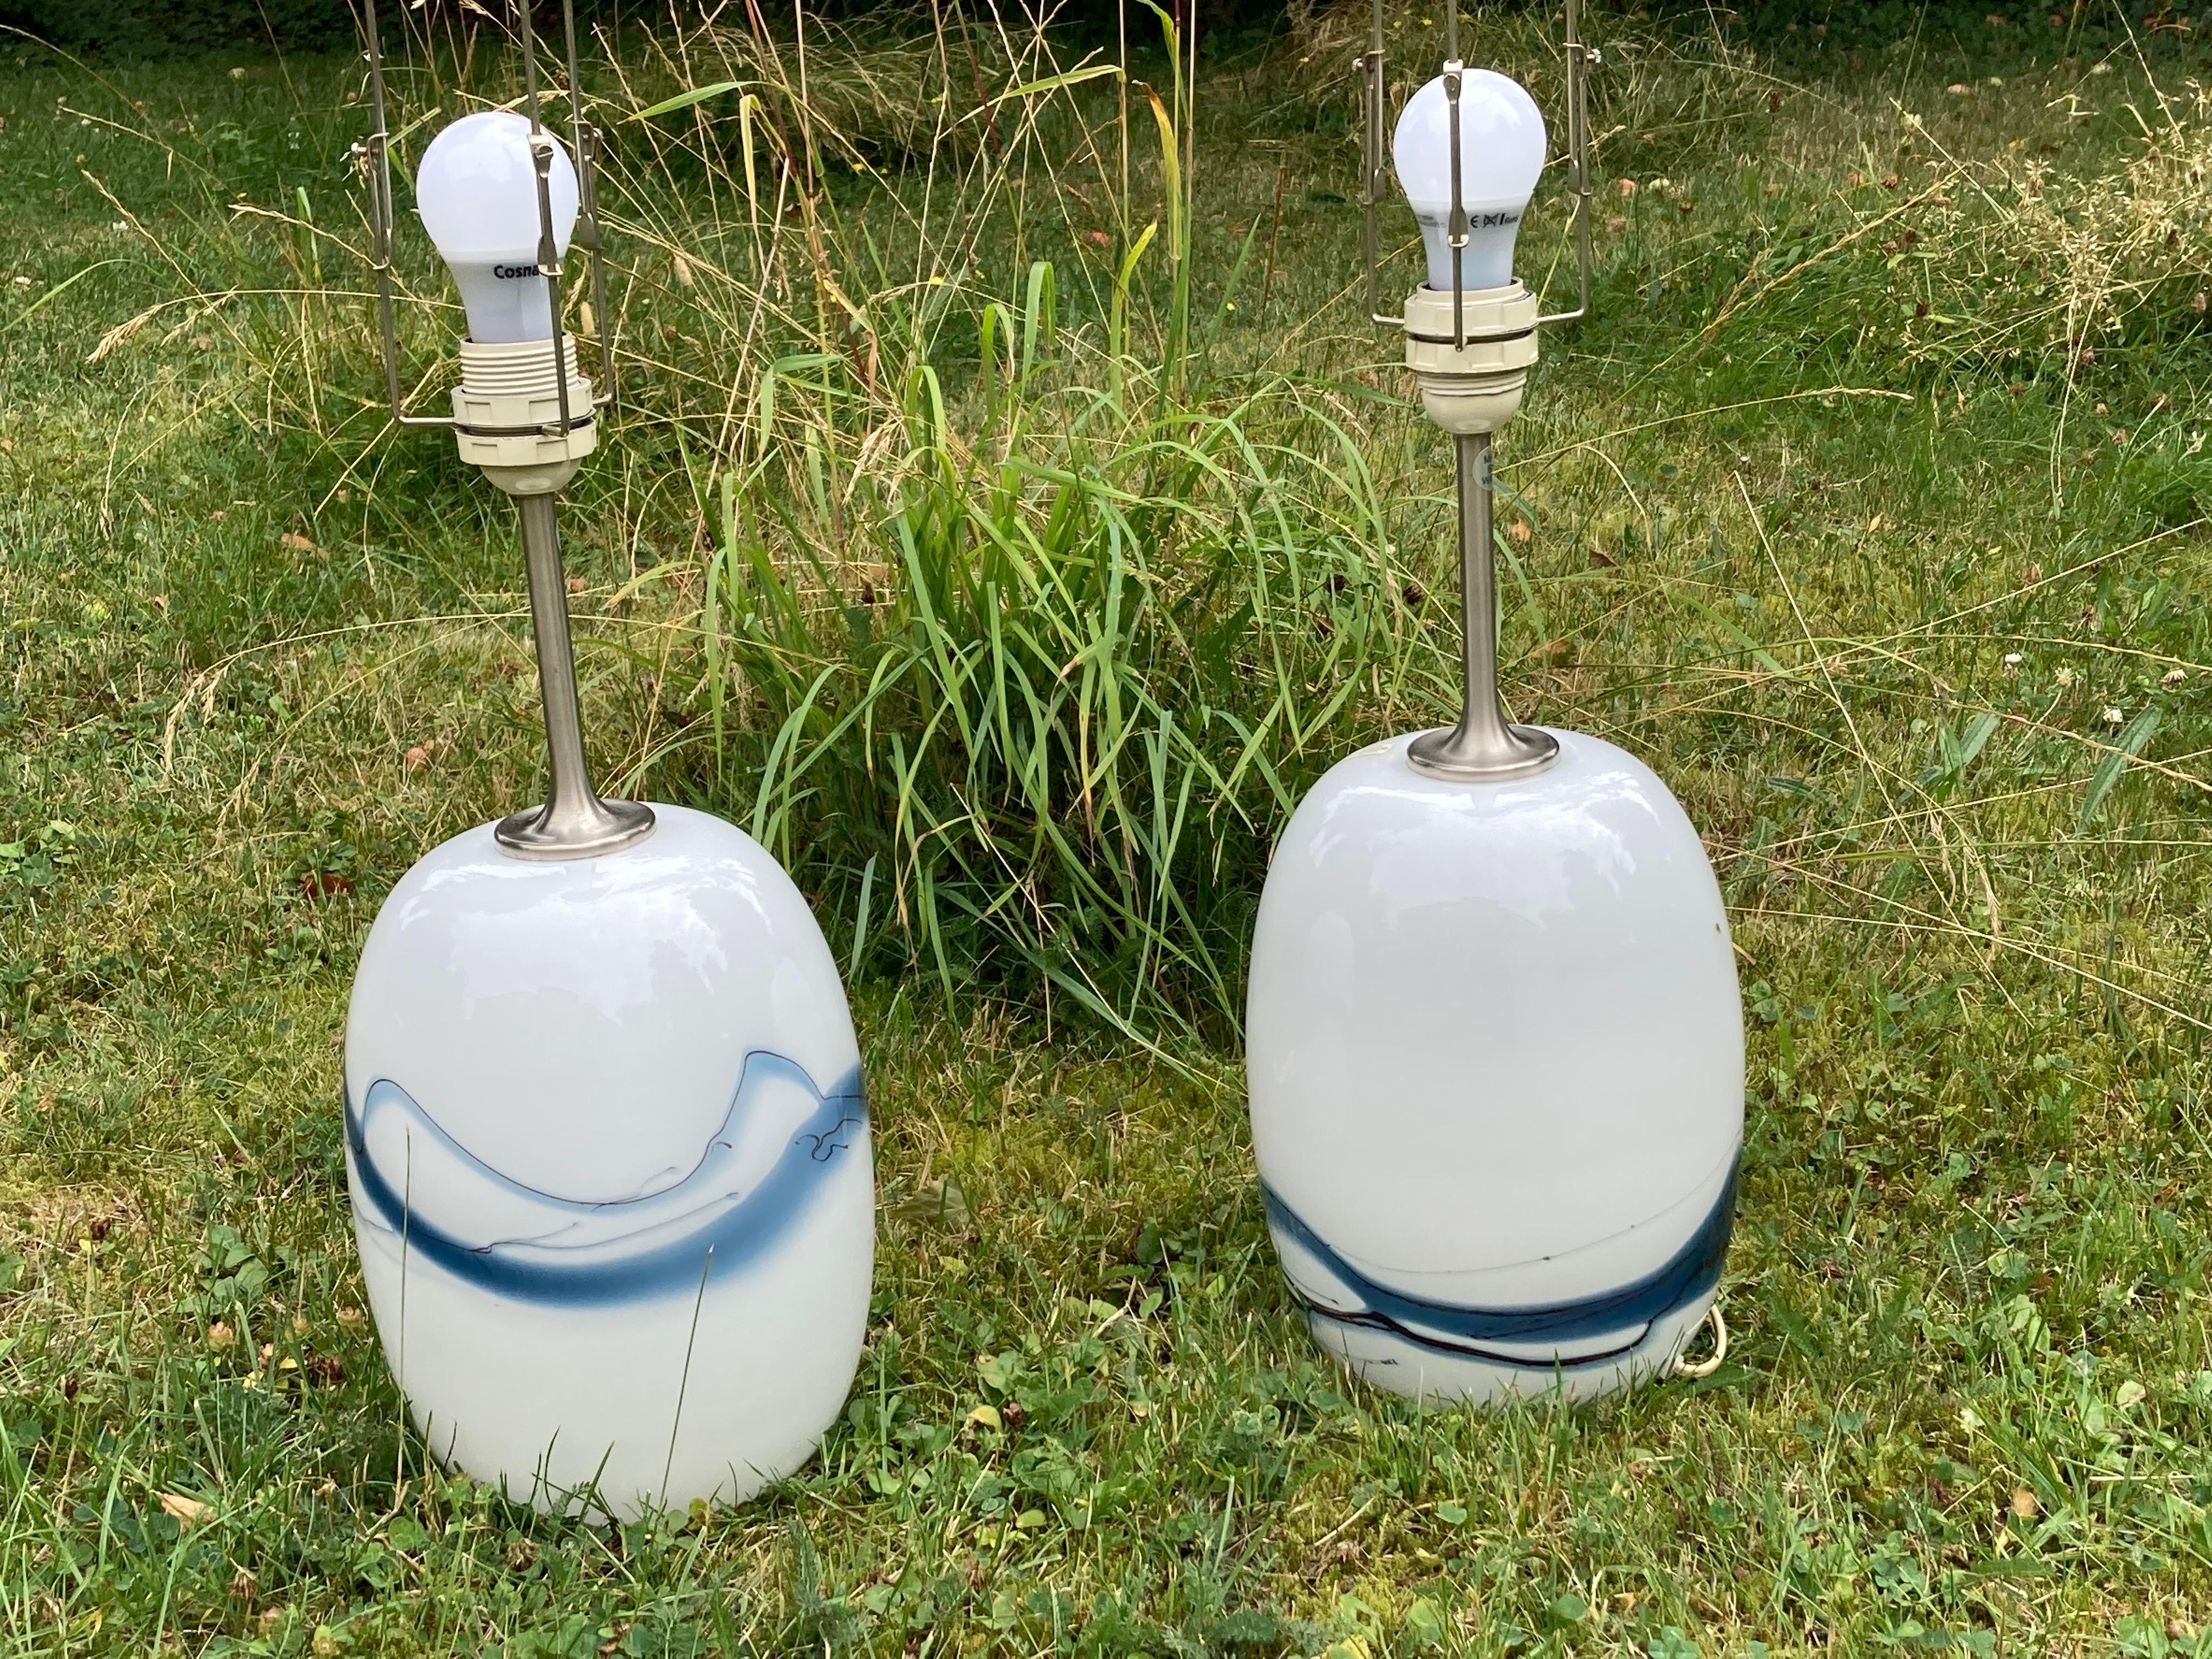 Deux lampes Holmegaard avec des accessoires en acier brossé par Holmegaard, Danemark, 1984 en blanc avec une variété de couleurs bleues en verre fondu sous le verre clair lisse conçu par Michael Bang, 1984.
La hauteur de 14